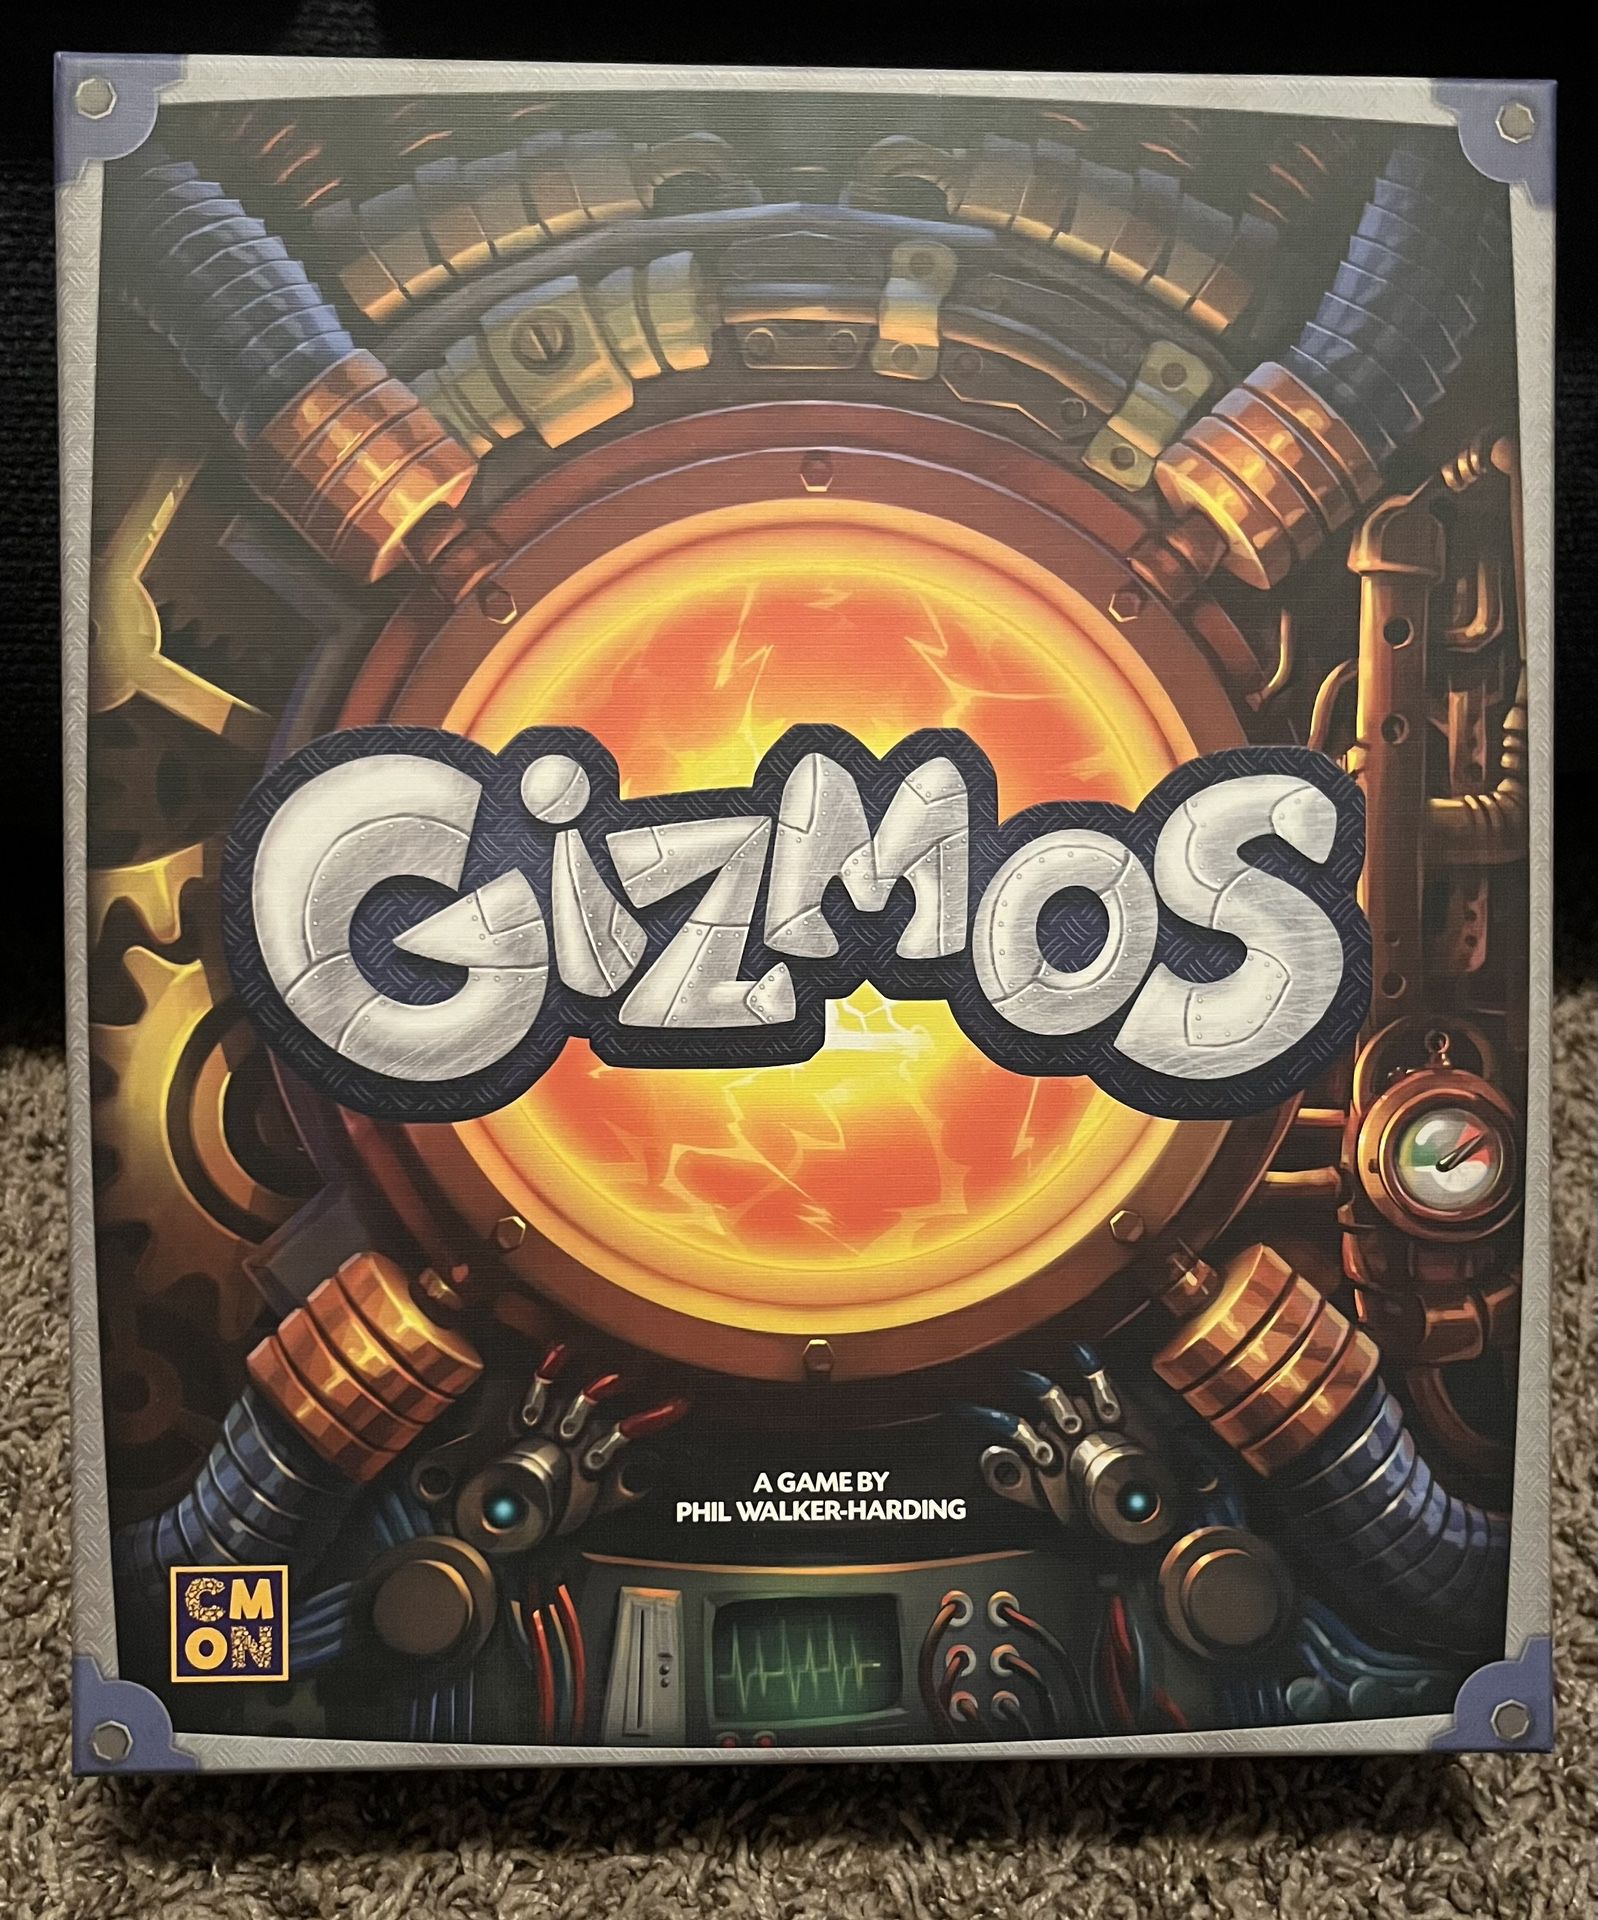 Gizmos Board Game